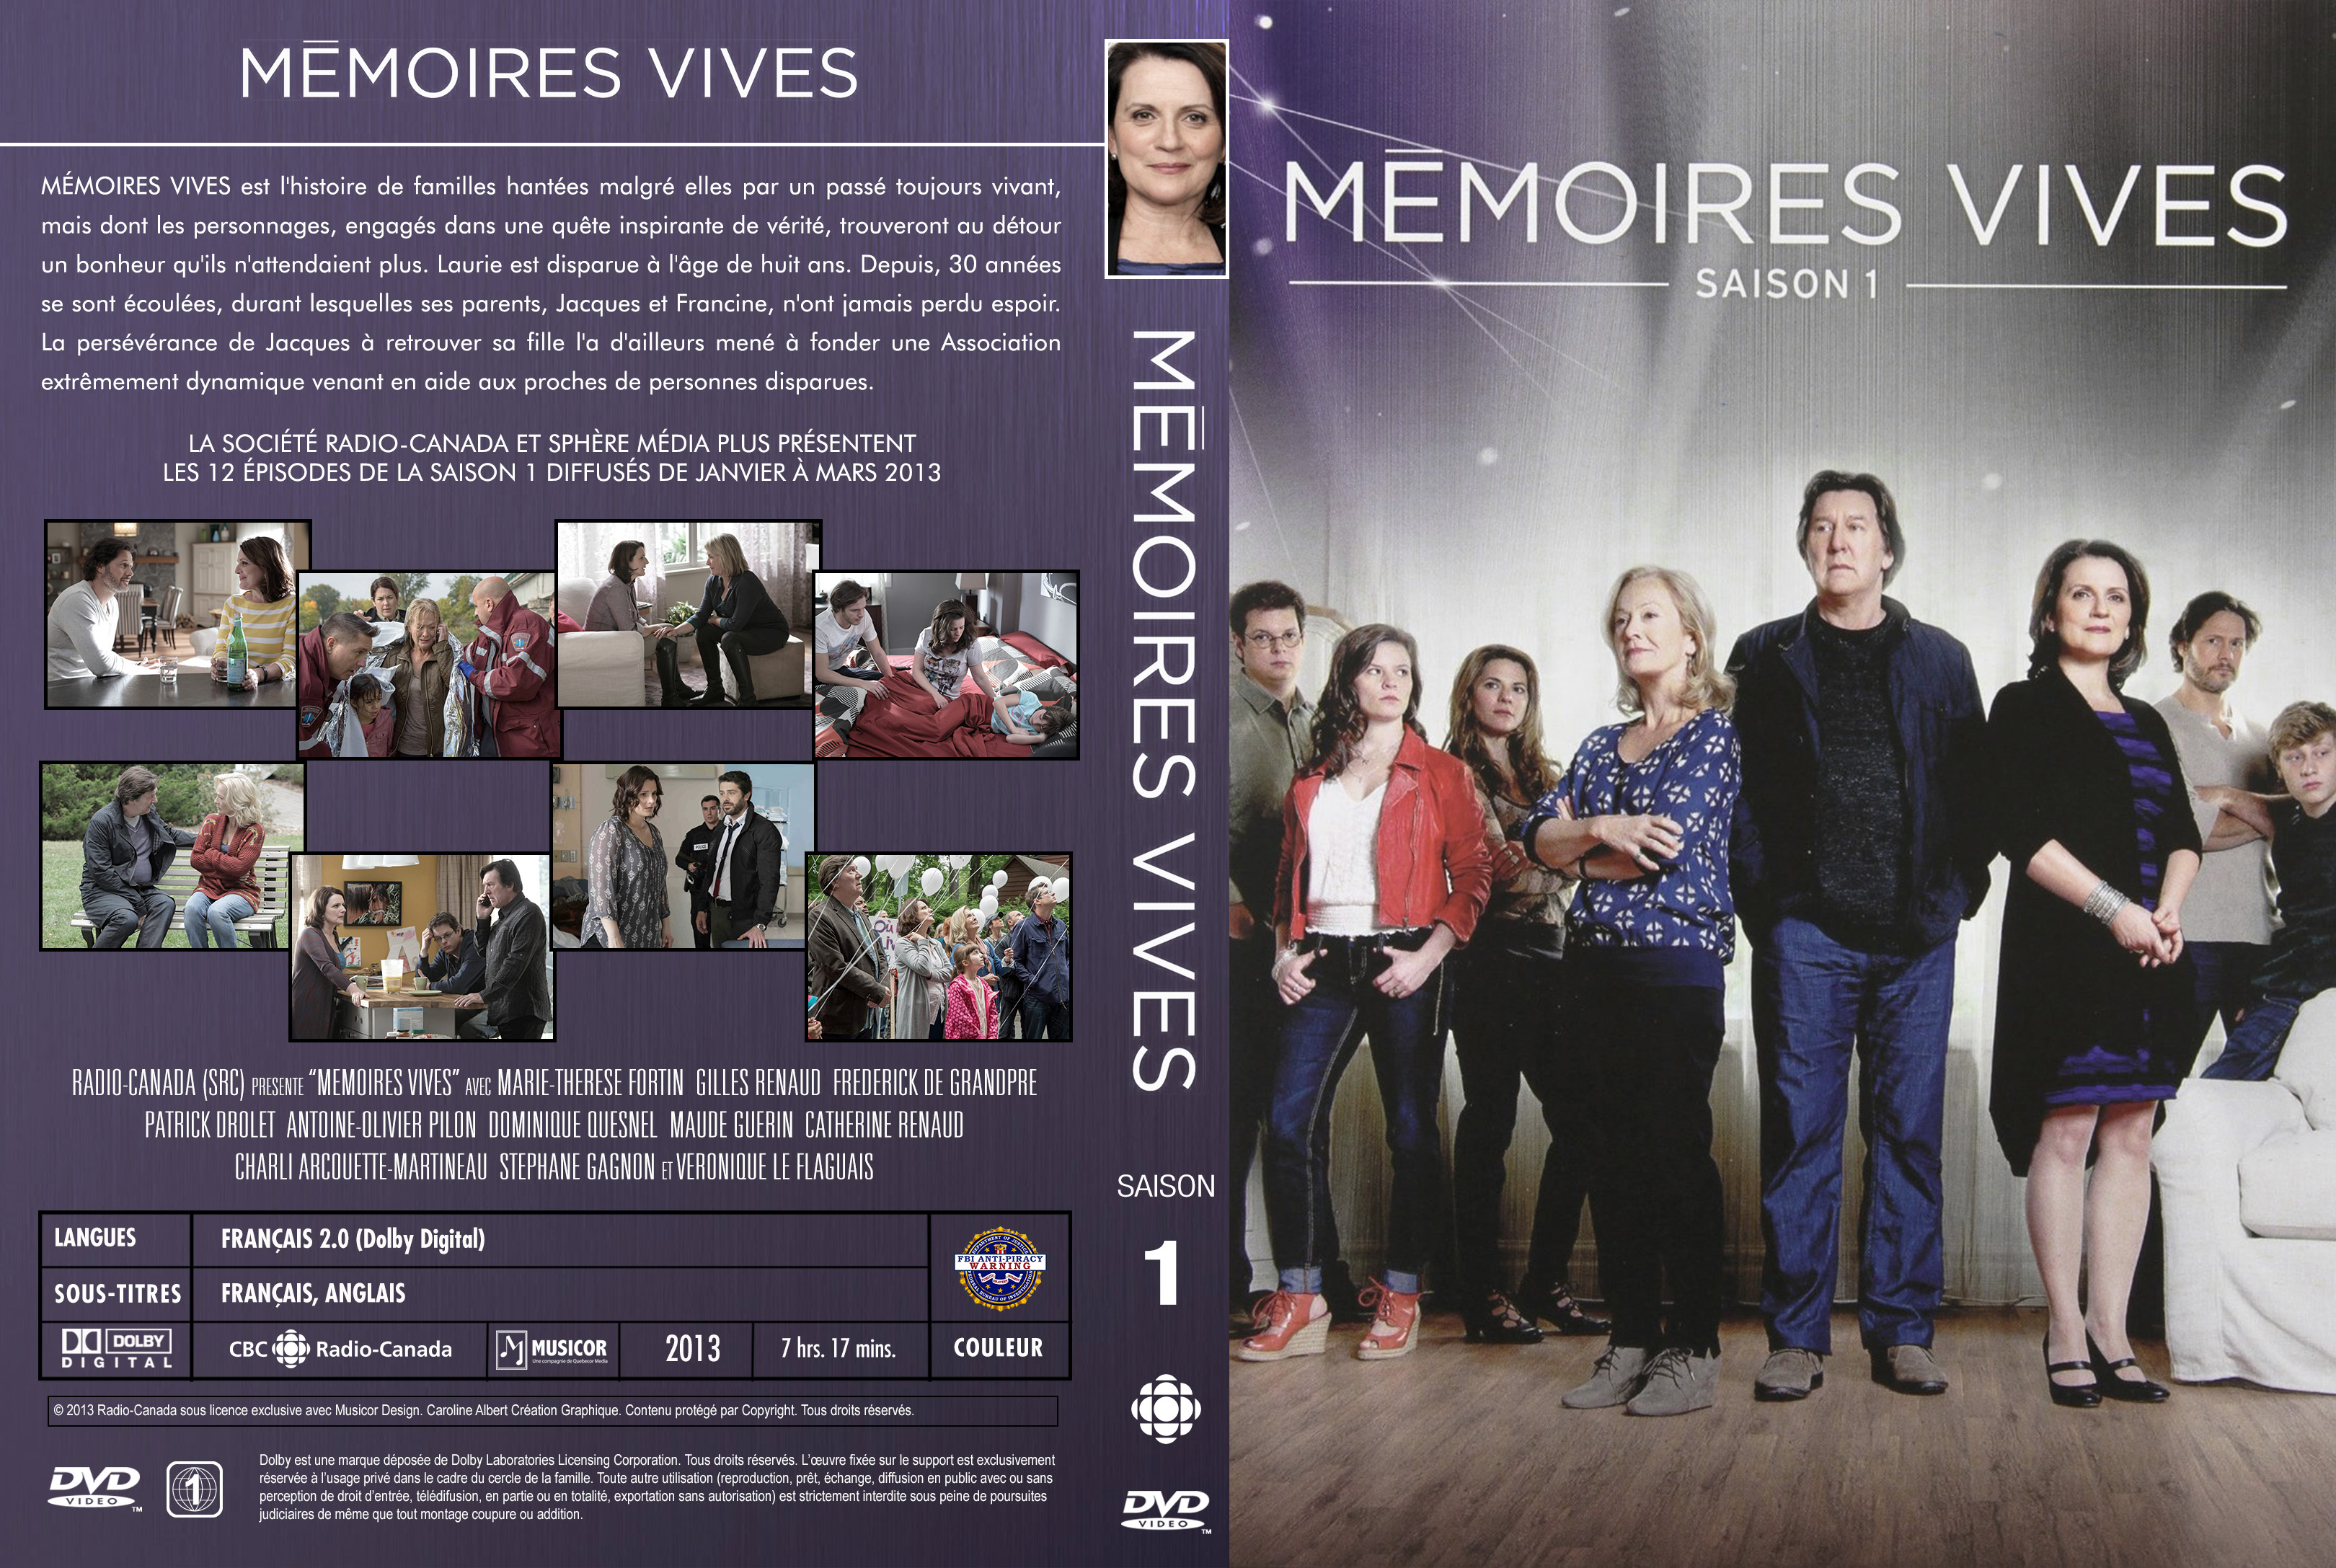 Jaquette DVD Memoires Vives Saison 1 custom